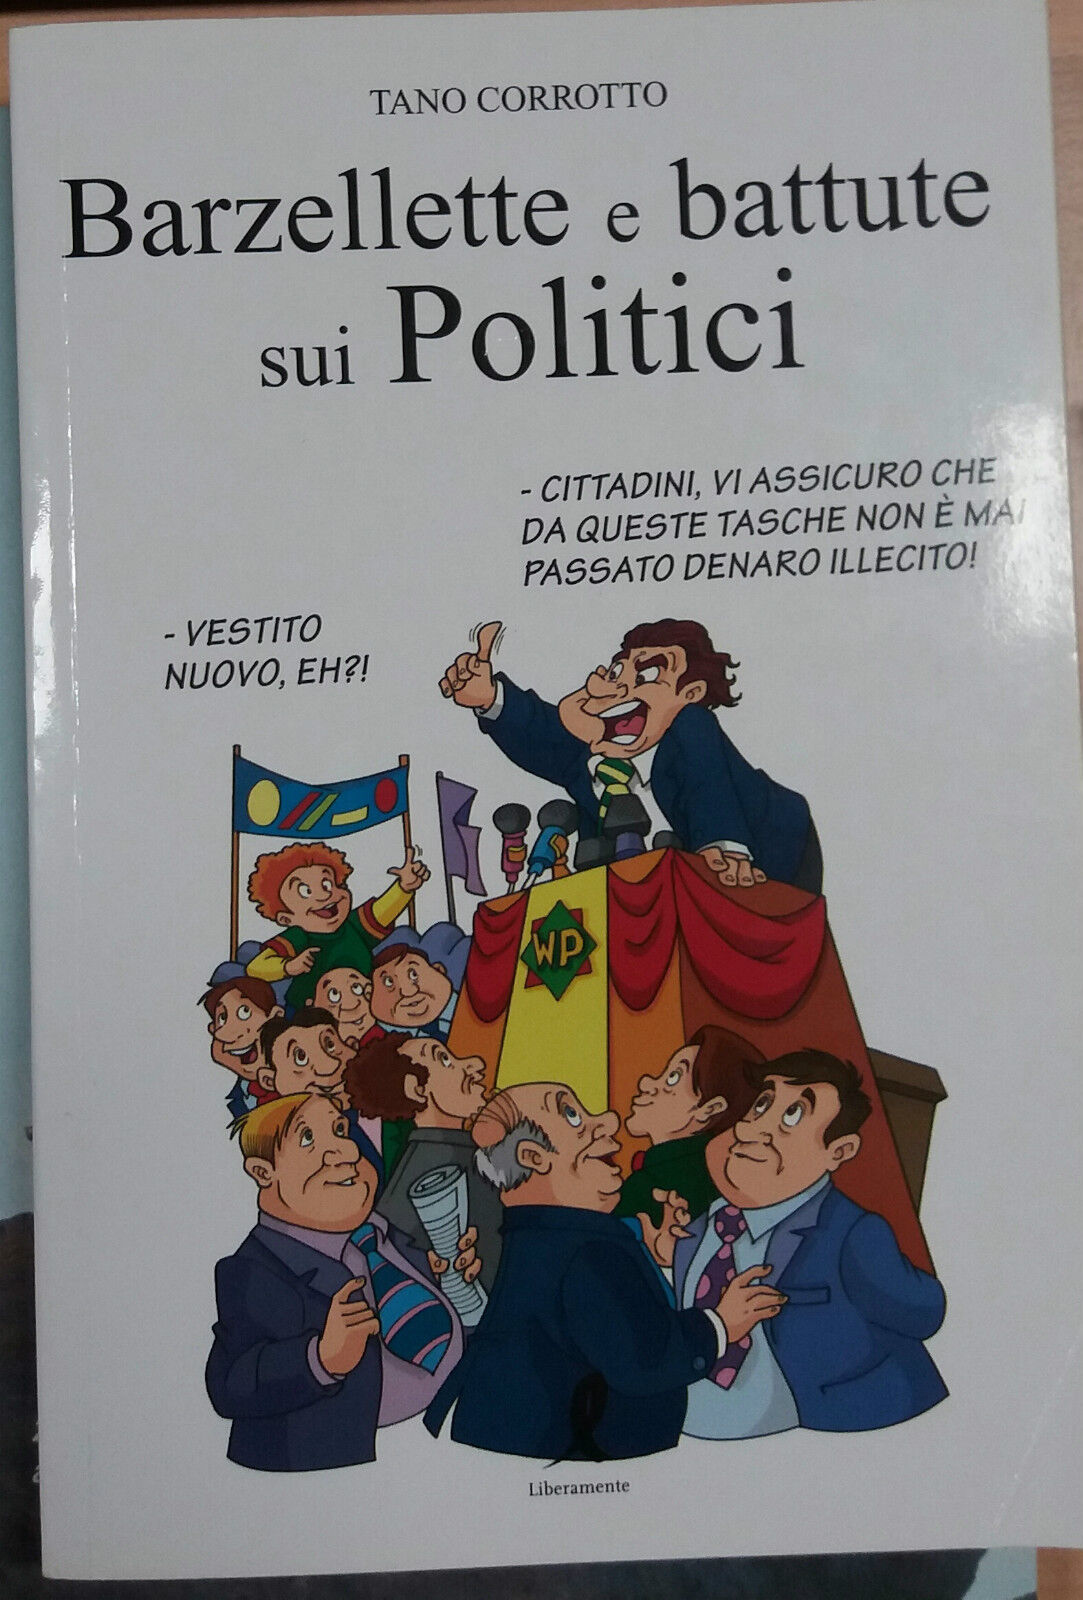 BARZELLETTE E BATTUTE SUI POLITICI - TANO CORROTTO - LIBERAMENTE - 2011 - M